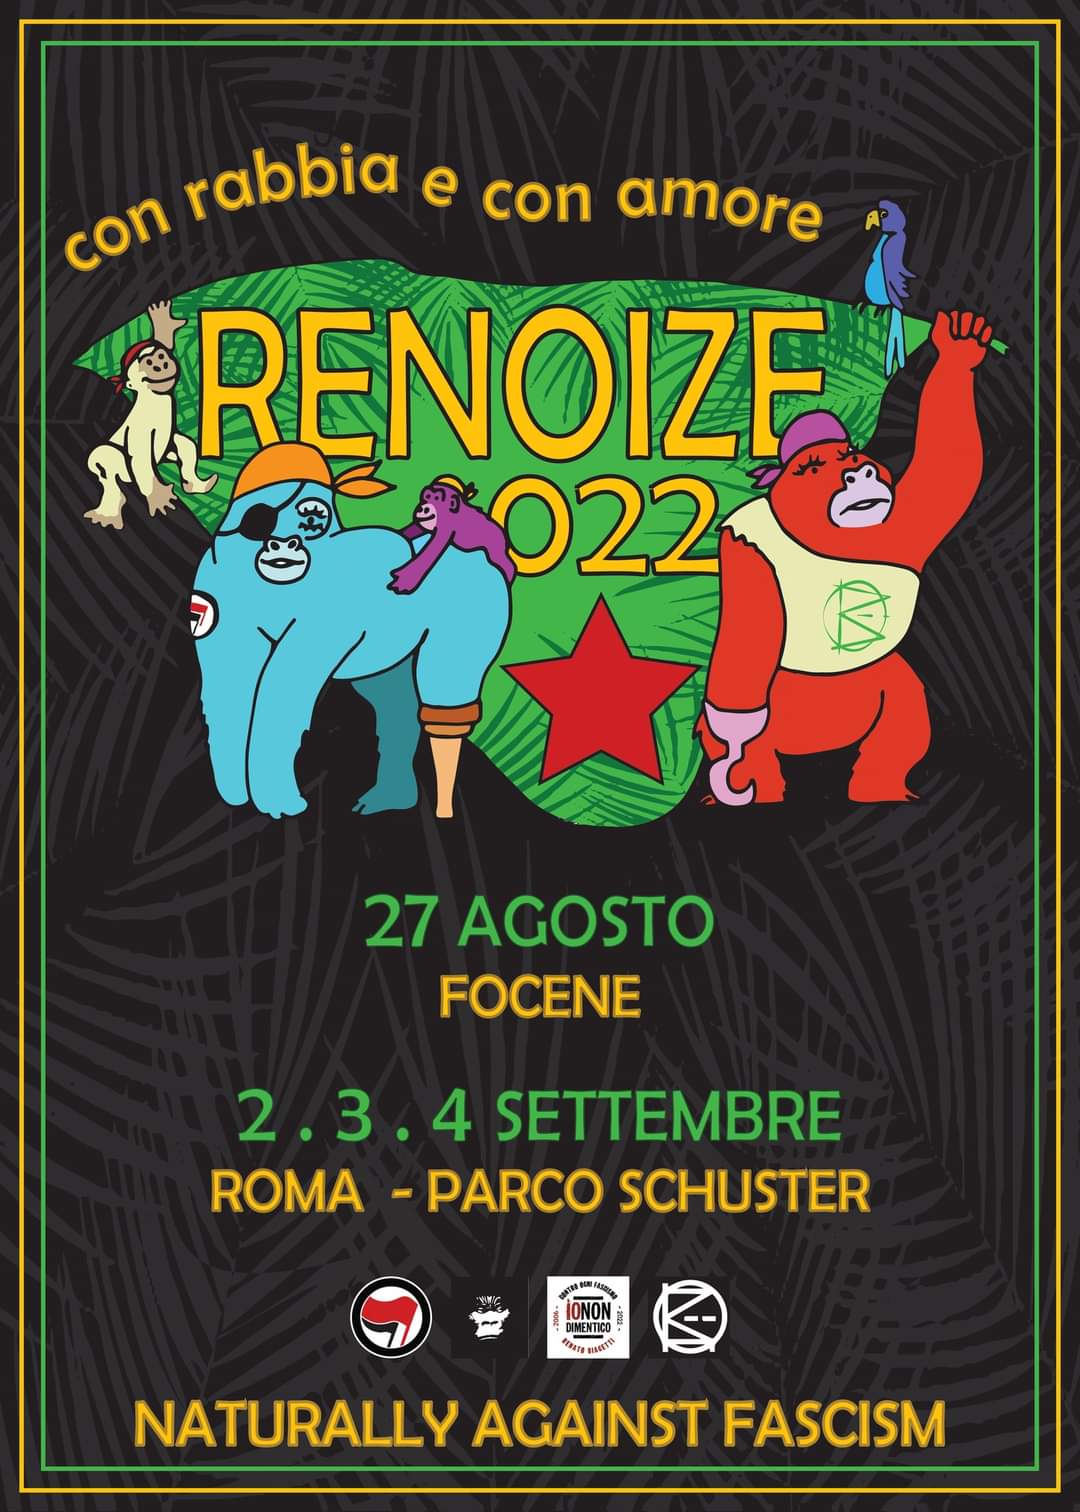 27 Ago Focene 2-3-4 Set Parco Schuster/ RENOIZE022 con Renato nel cuore